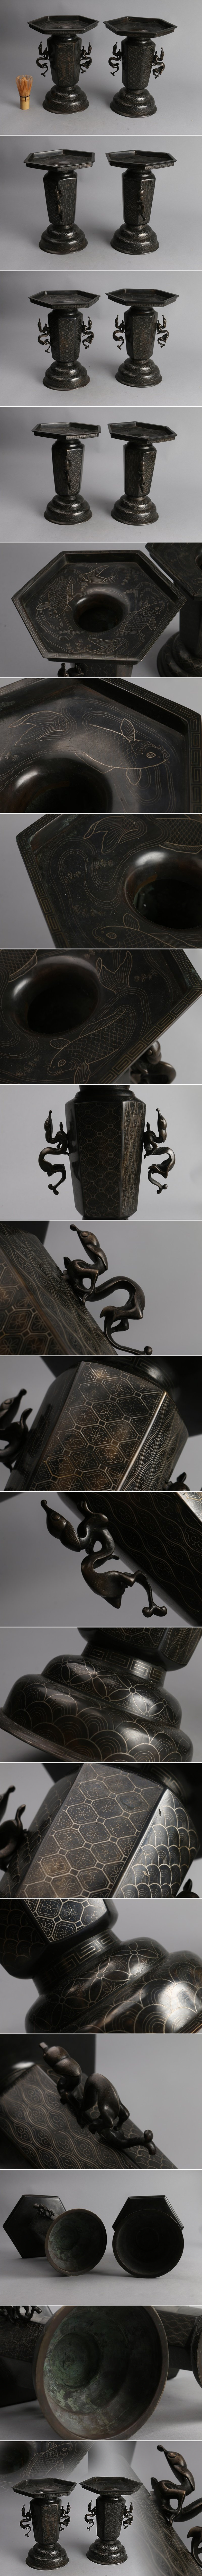 豊富な最新作特別出品 極上 銅製 古銅 明治金工 細密 銀象嵌 雨竜耳 花器 花瓶 一対 AHJ94 花器